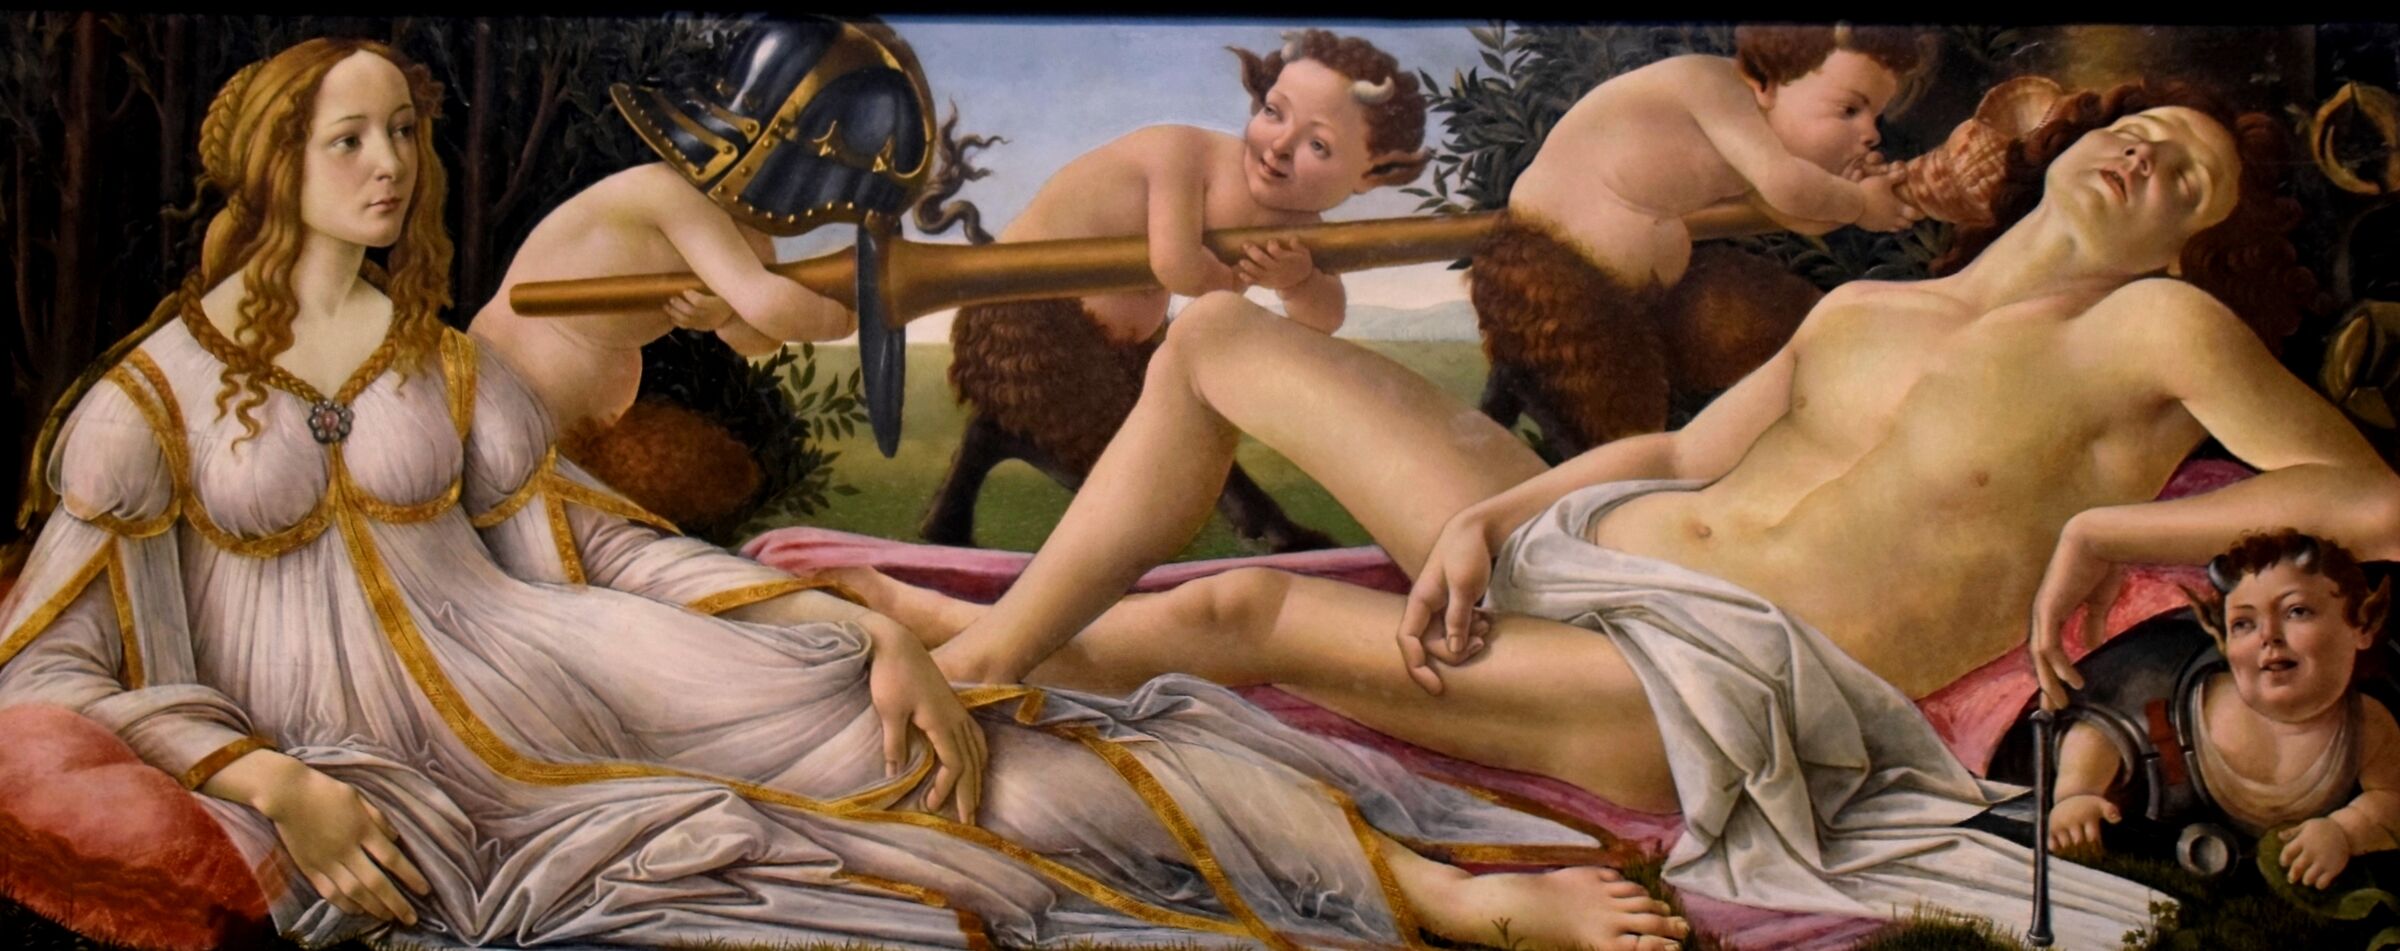 Sandro Botticelli "Venus and Mars"...